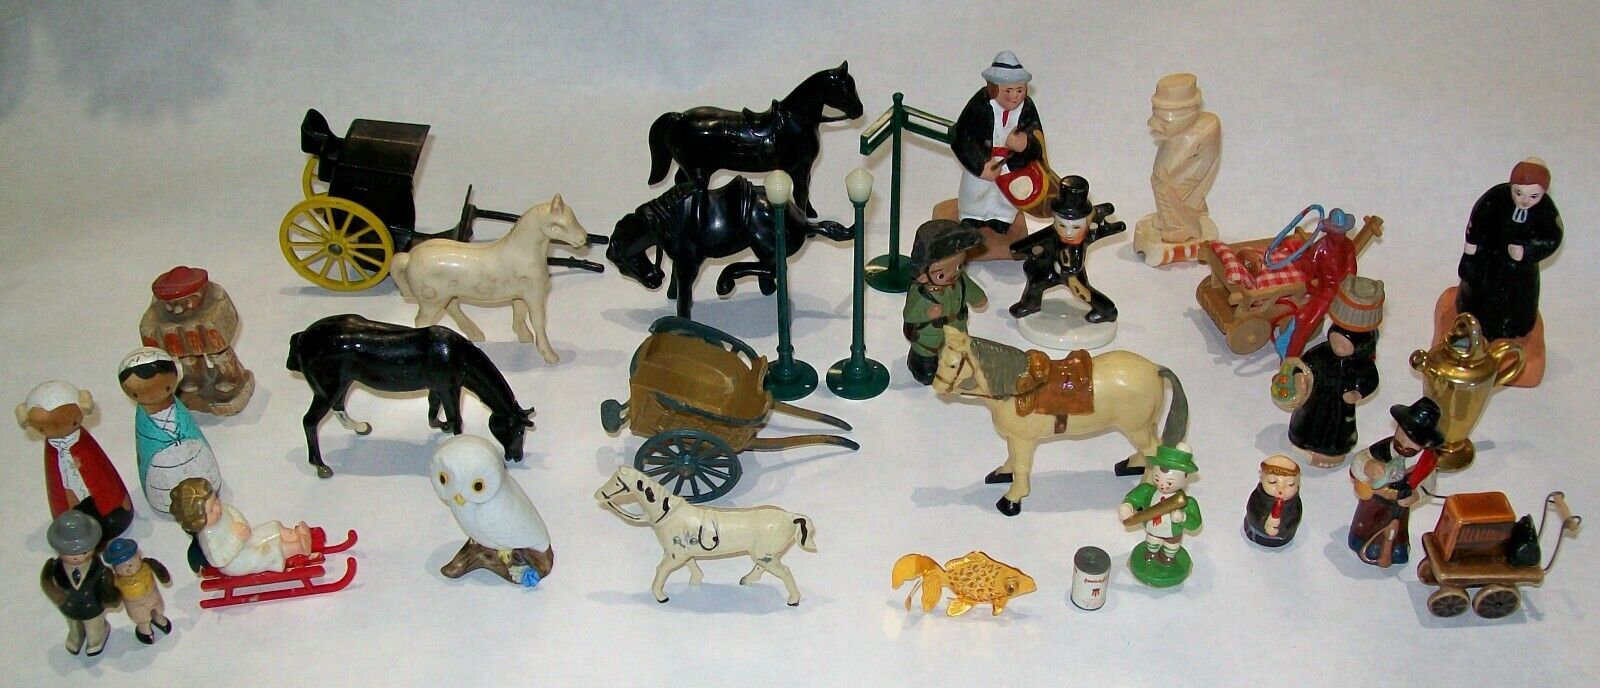 Vintage Antique Miniature Collectibles Assorted 34 piece LOT Figures toys horses